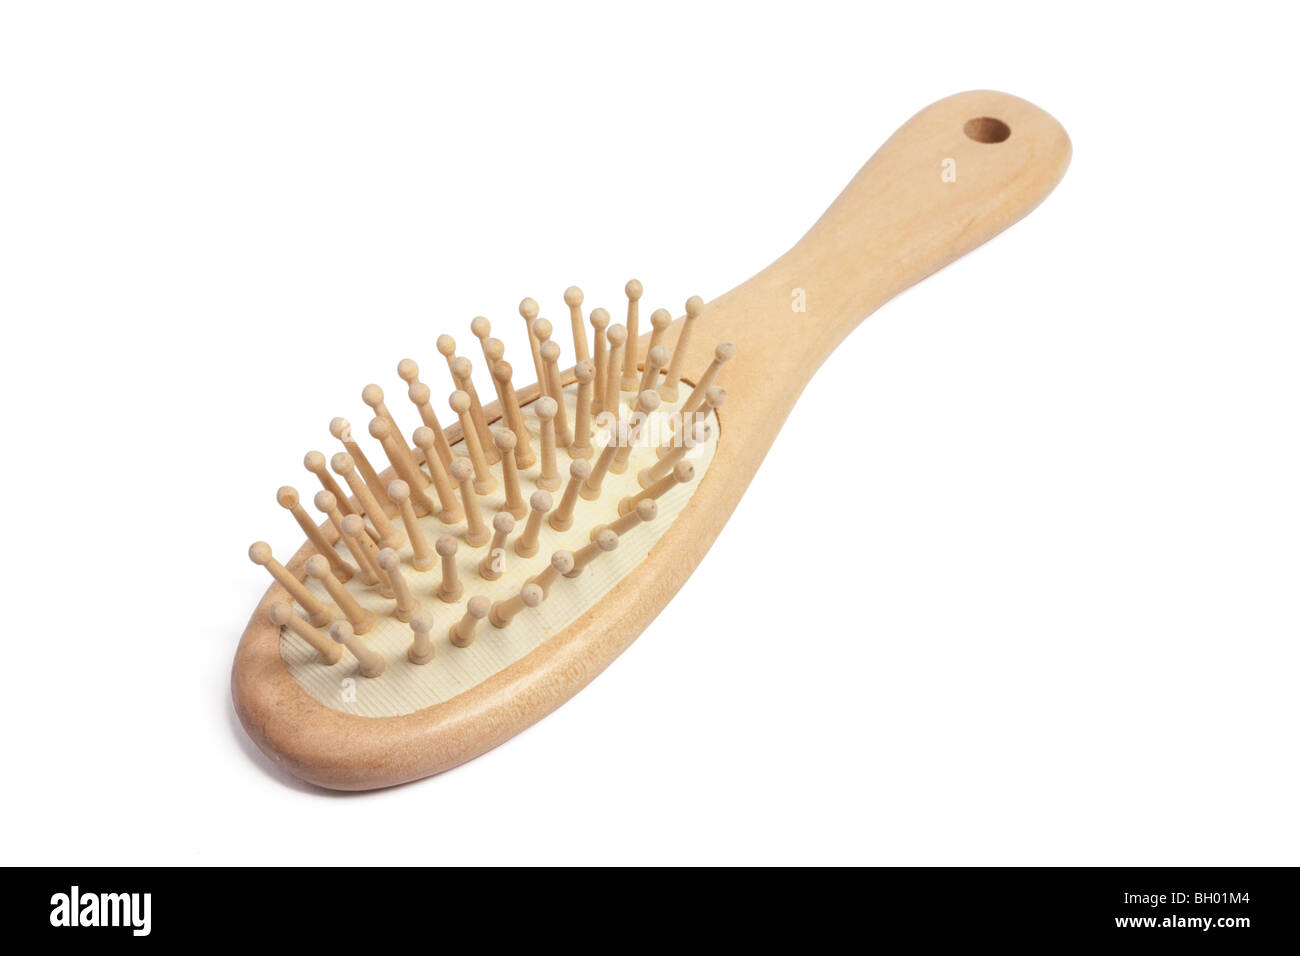 Wooden Hairbrush Stock Photo